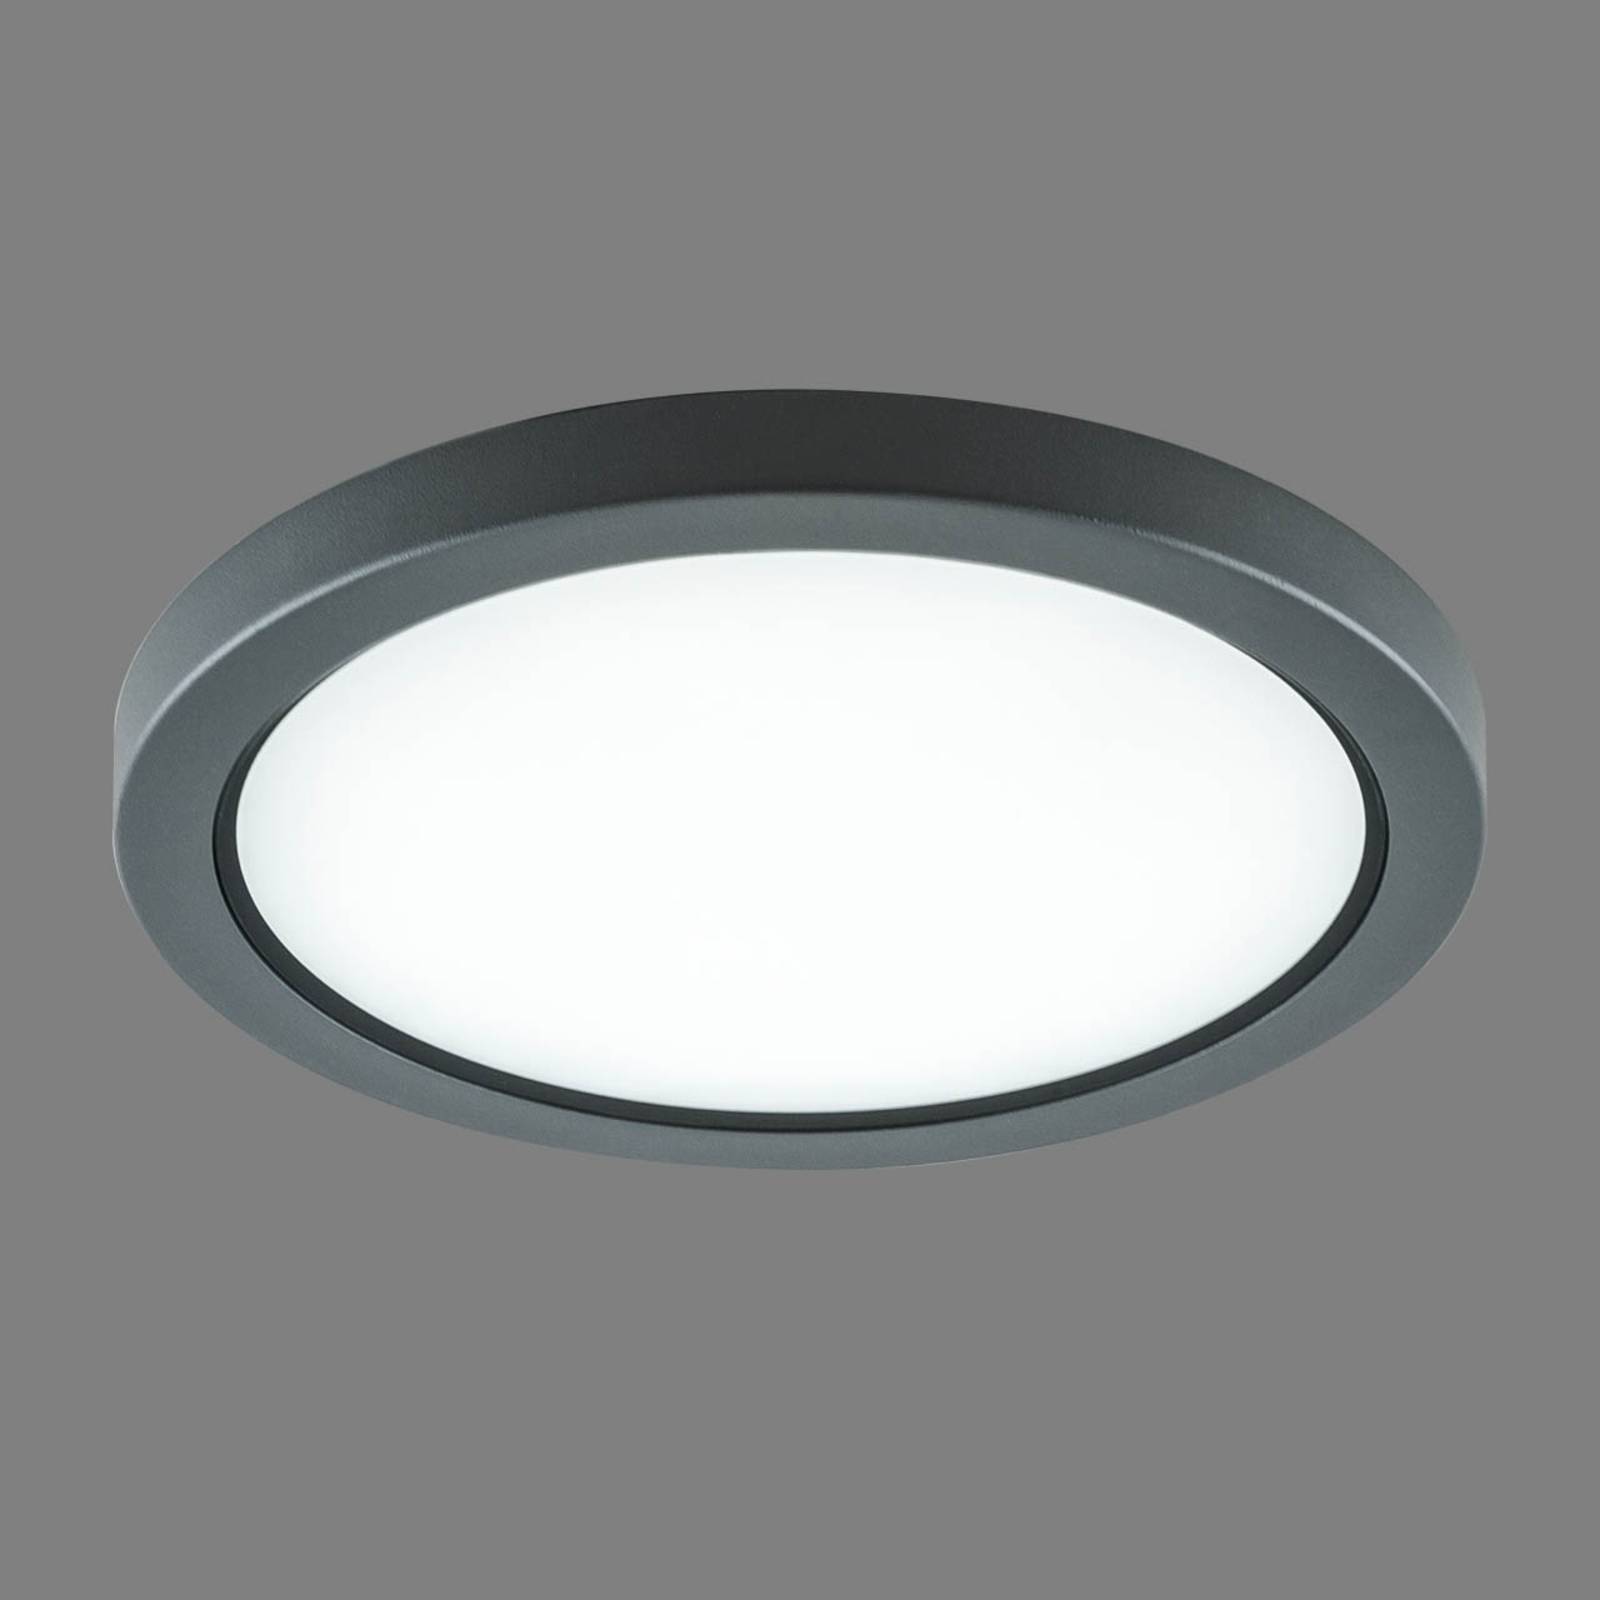 Image of EVN Tectum plafonnier d'extérieur LED rond, verre 4037293021548